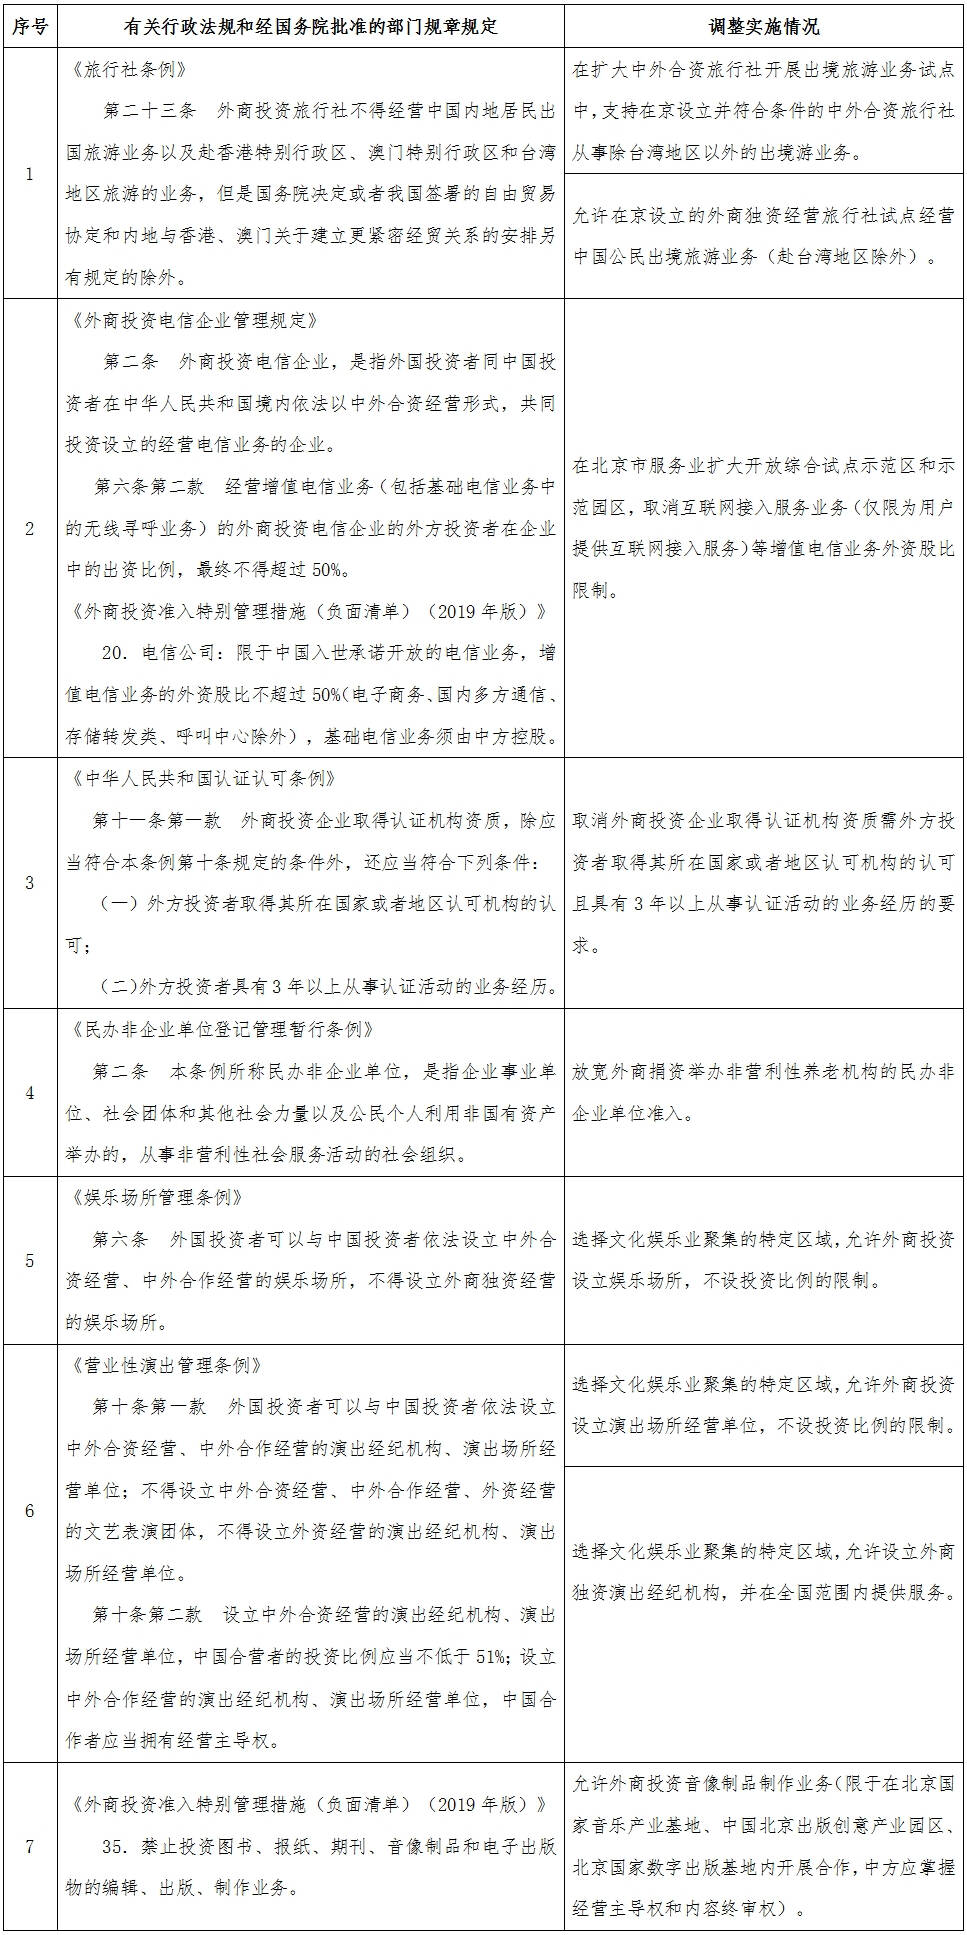 国函〔2019〕111号《国务院关于同意在北京市暂时调整实施有关行政法规和经国务院批准的部门规章规定的批复》【停止执行】